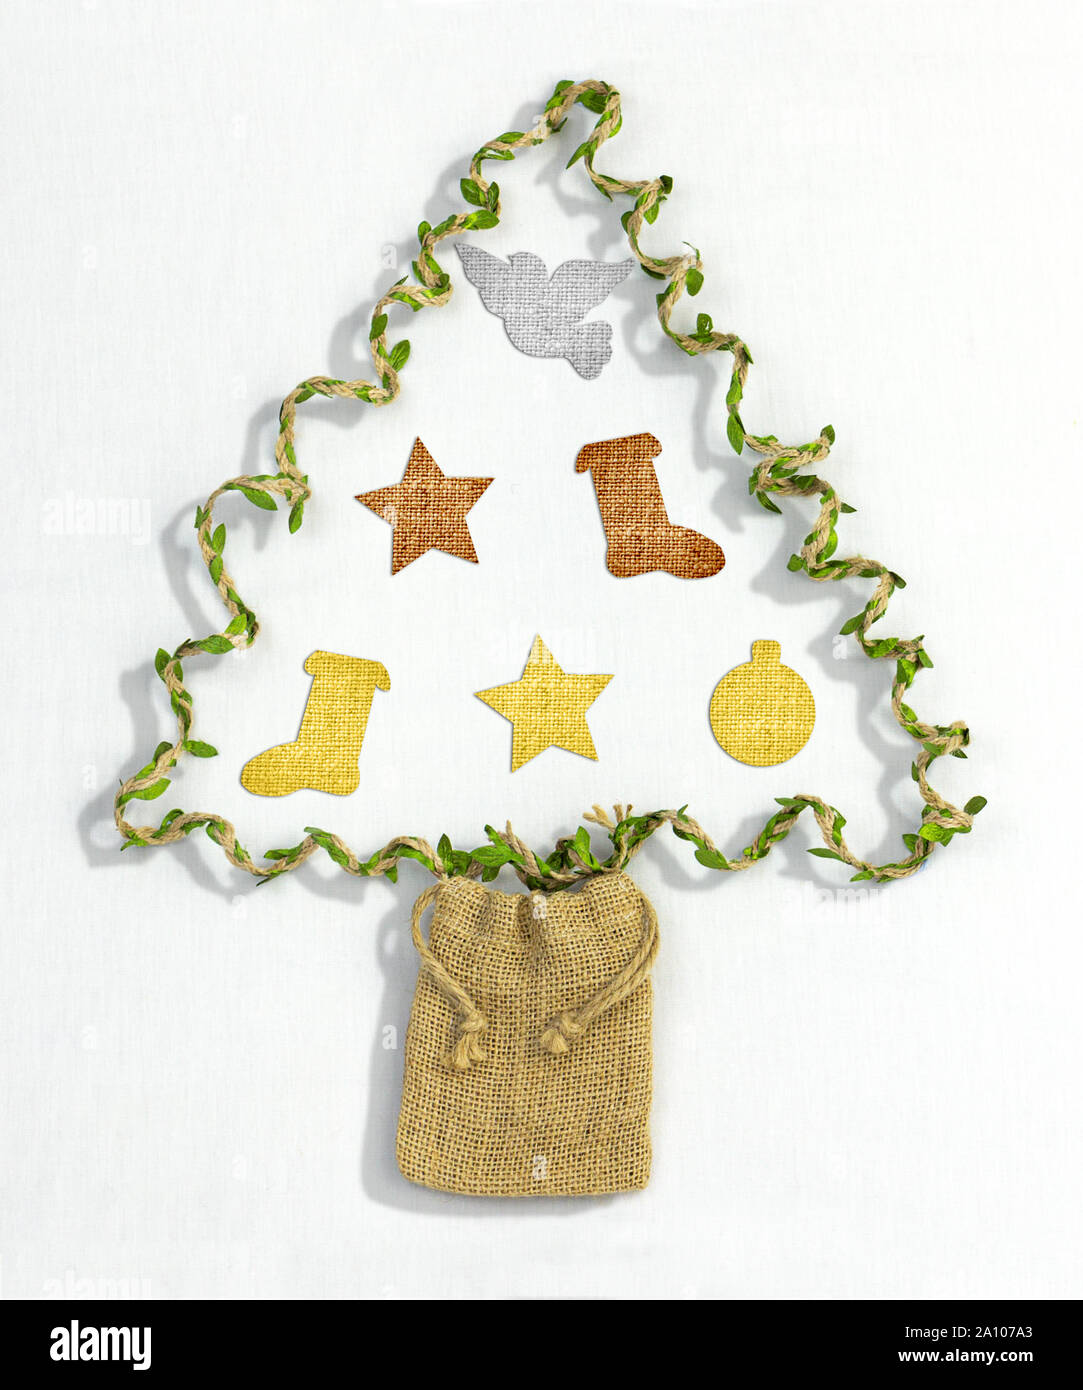 Handgefertigte Weihnachtsbaum aus recycelten Geschenk Garn und Hanf Geschenkbeutel mit textilen Dekorationen aus recyceltem Material auf weißem Hintergrund, sust Stockfoto